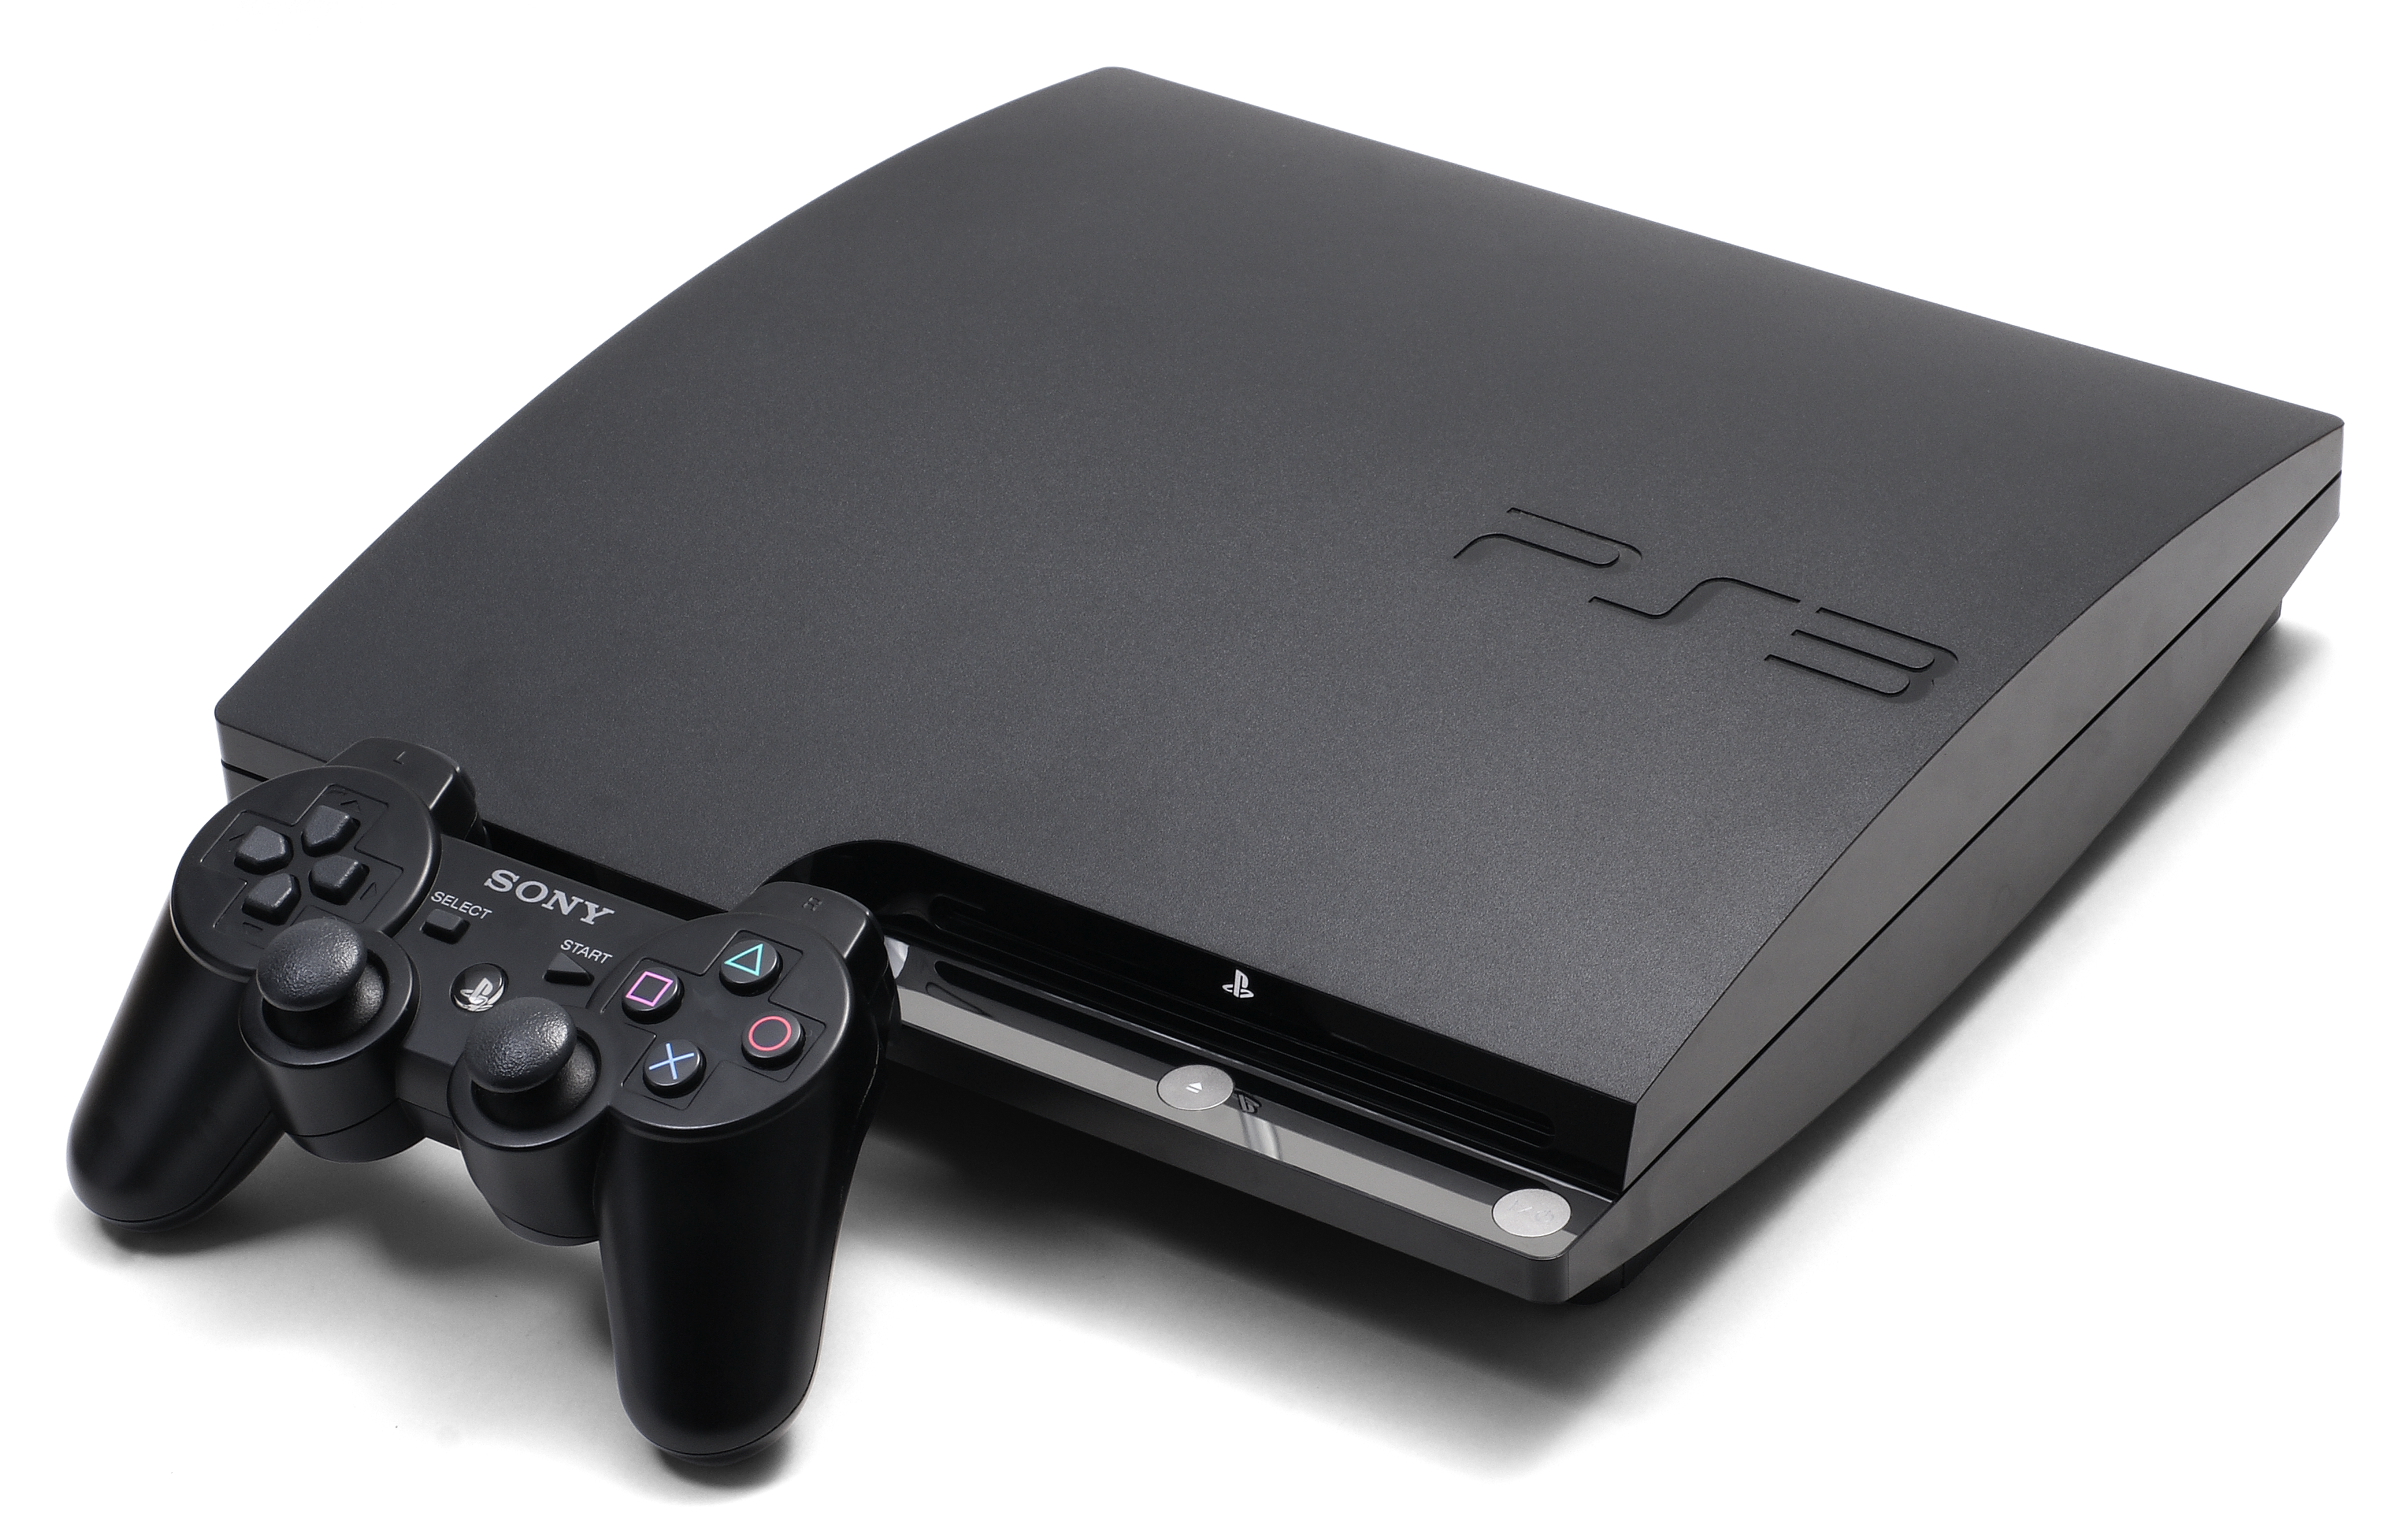 PlayStation 3: aprenda a jogar online com o console da Sony